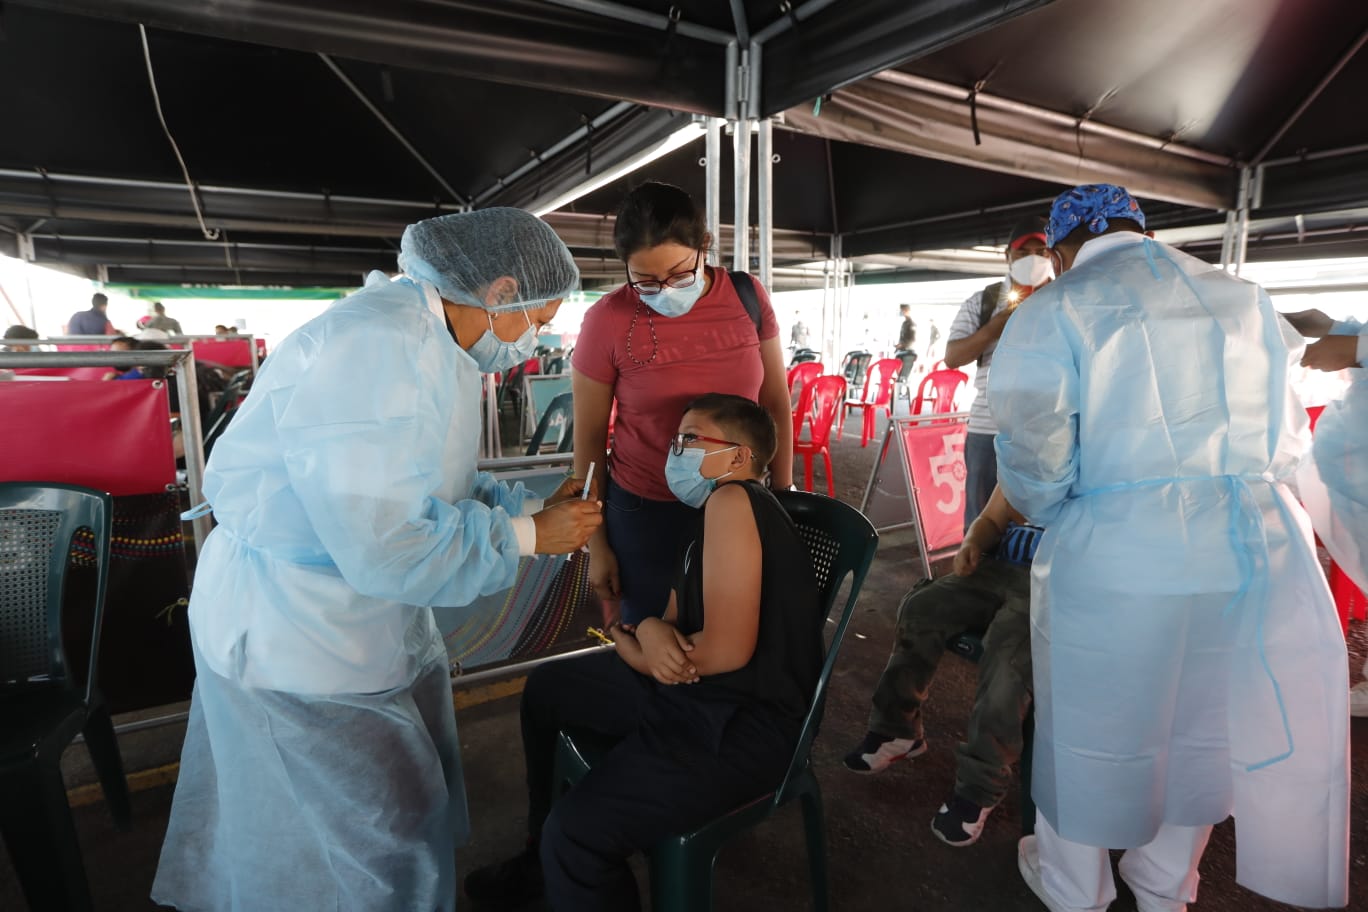 Jornadas de vacunación en niños con la vacuna Moderna comenzaron esta semana. (Foto Prensa Libre: Esbin García)